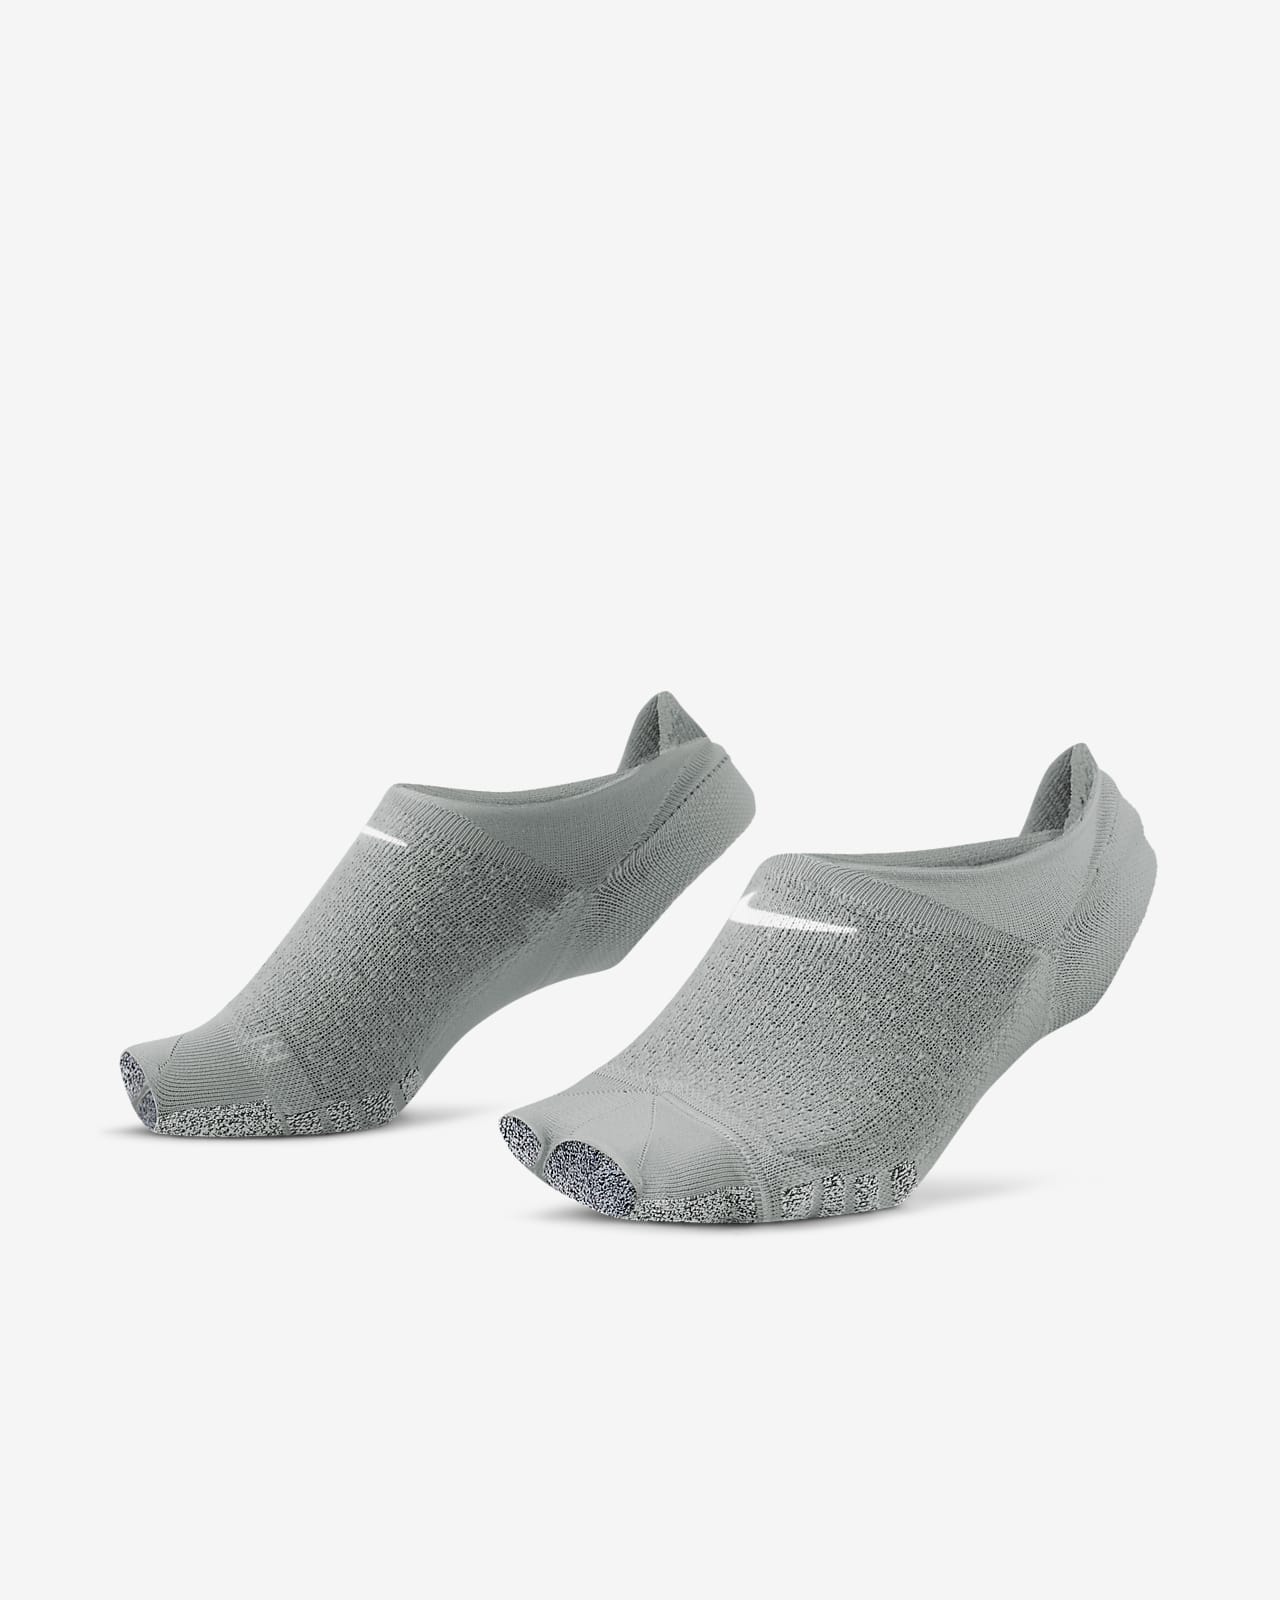 3 Pairs Children'S Floor Socks, Non-Slip Yoga Socks With Point